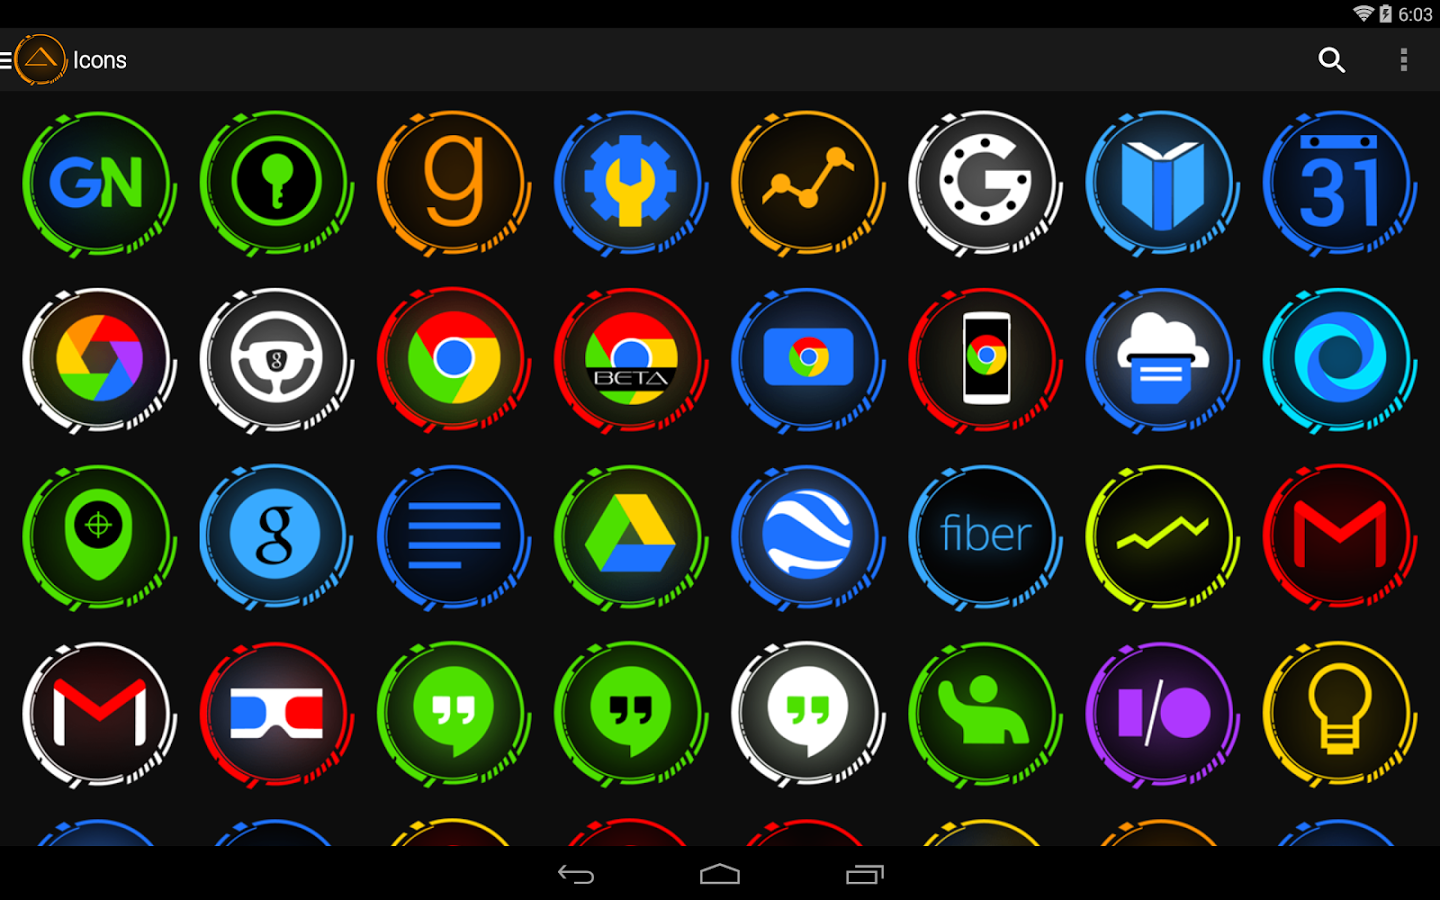 Картинки иконок андроид. Иконка андроид. Значки приложений. Яркие иконки для андроид. Иконка приложения в стиле андроид.